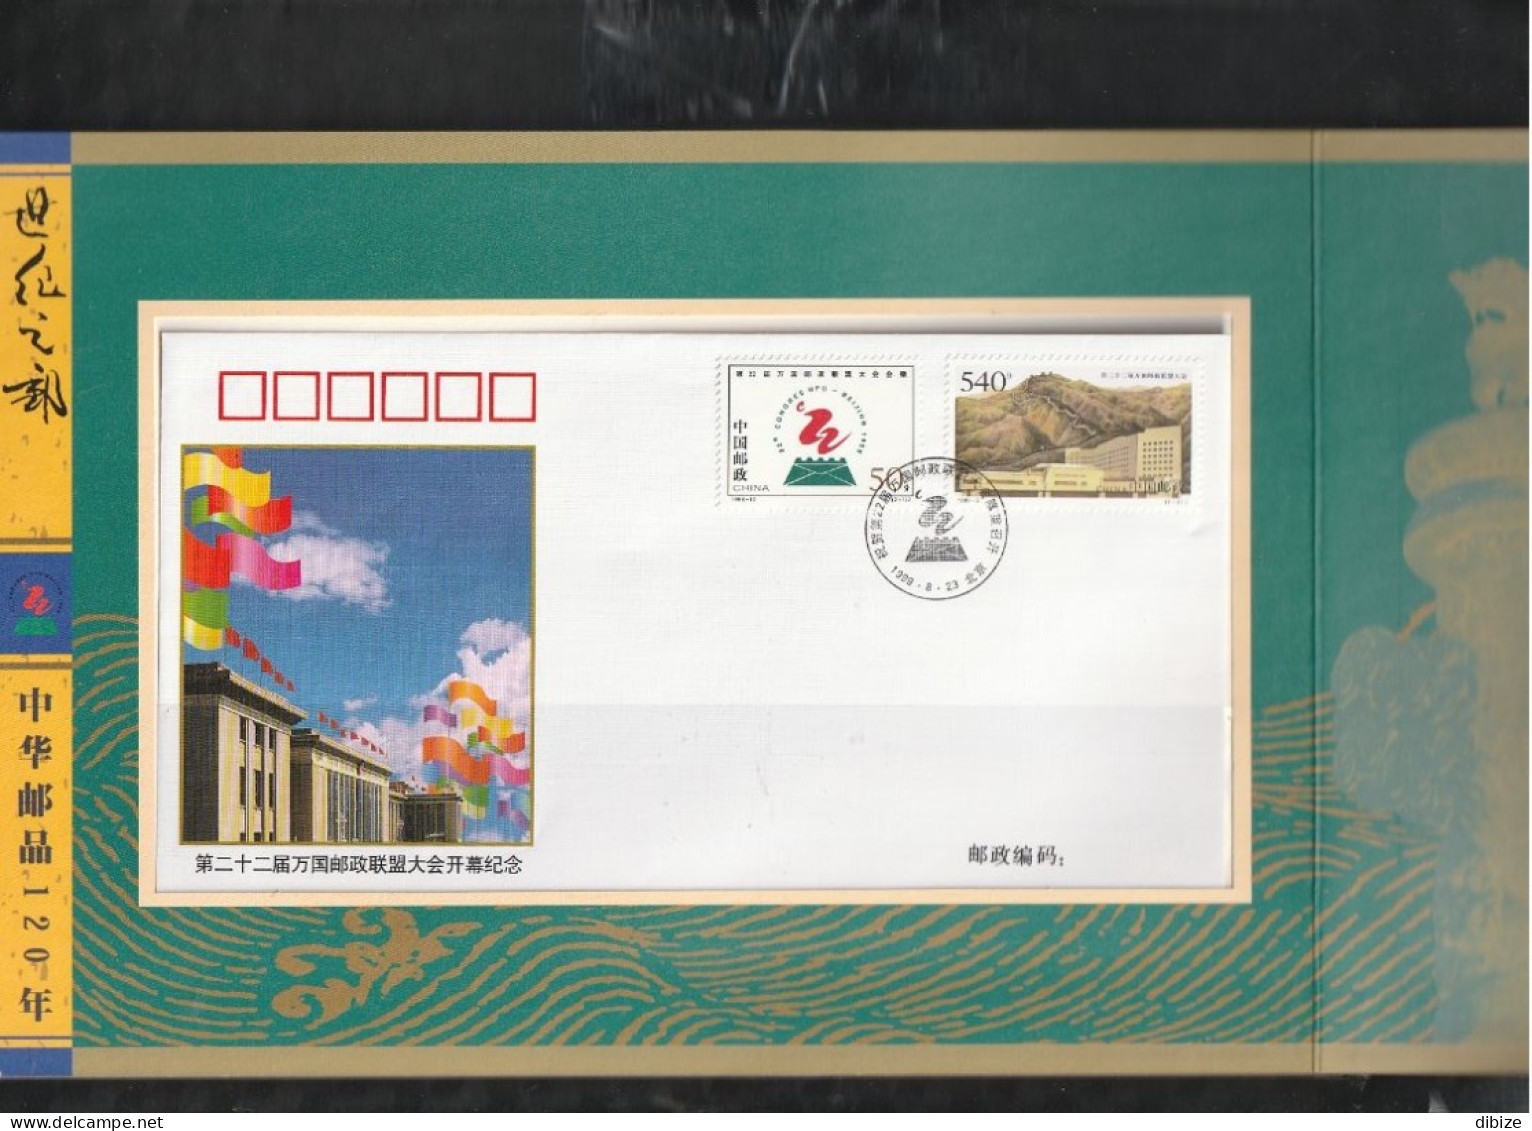 Chine. Un siècle d'histoire postale de la Chine. FDC + 2 DVDs.